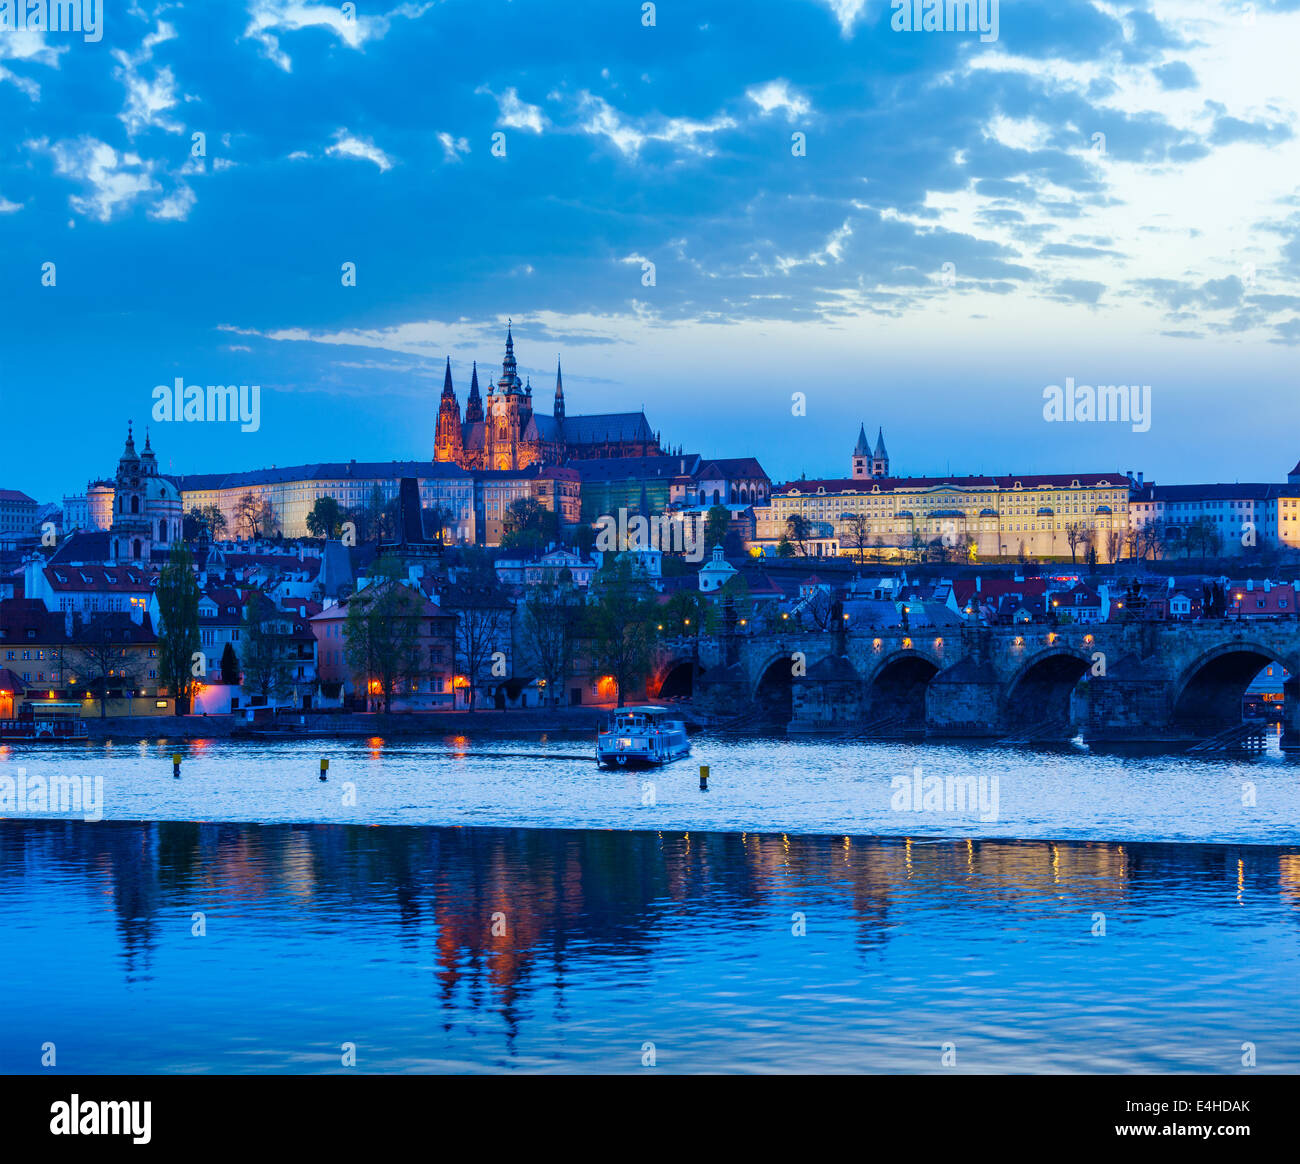 Reisen Prag Europa Konzept Hintergrund - Blick auf die Karlsbrücke und die Prager Burg in der Dämmerung. Prag, Tschechische Republik Stockfoto